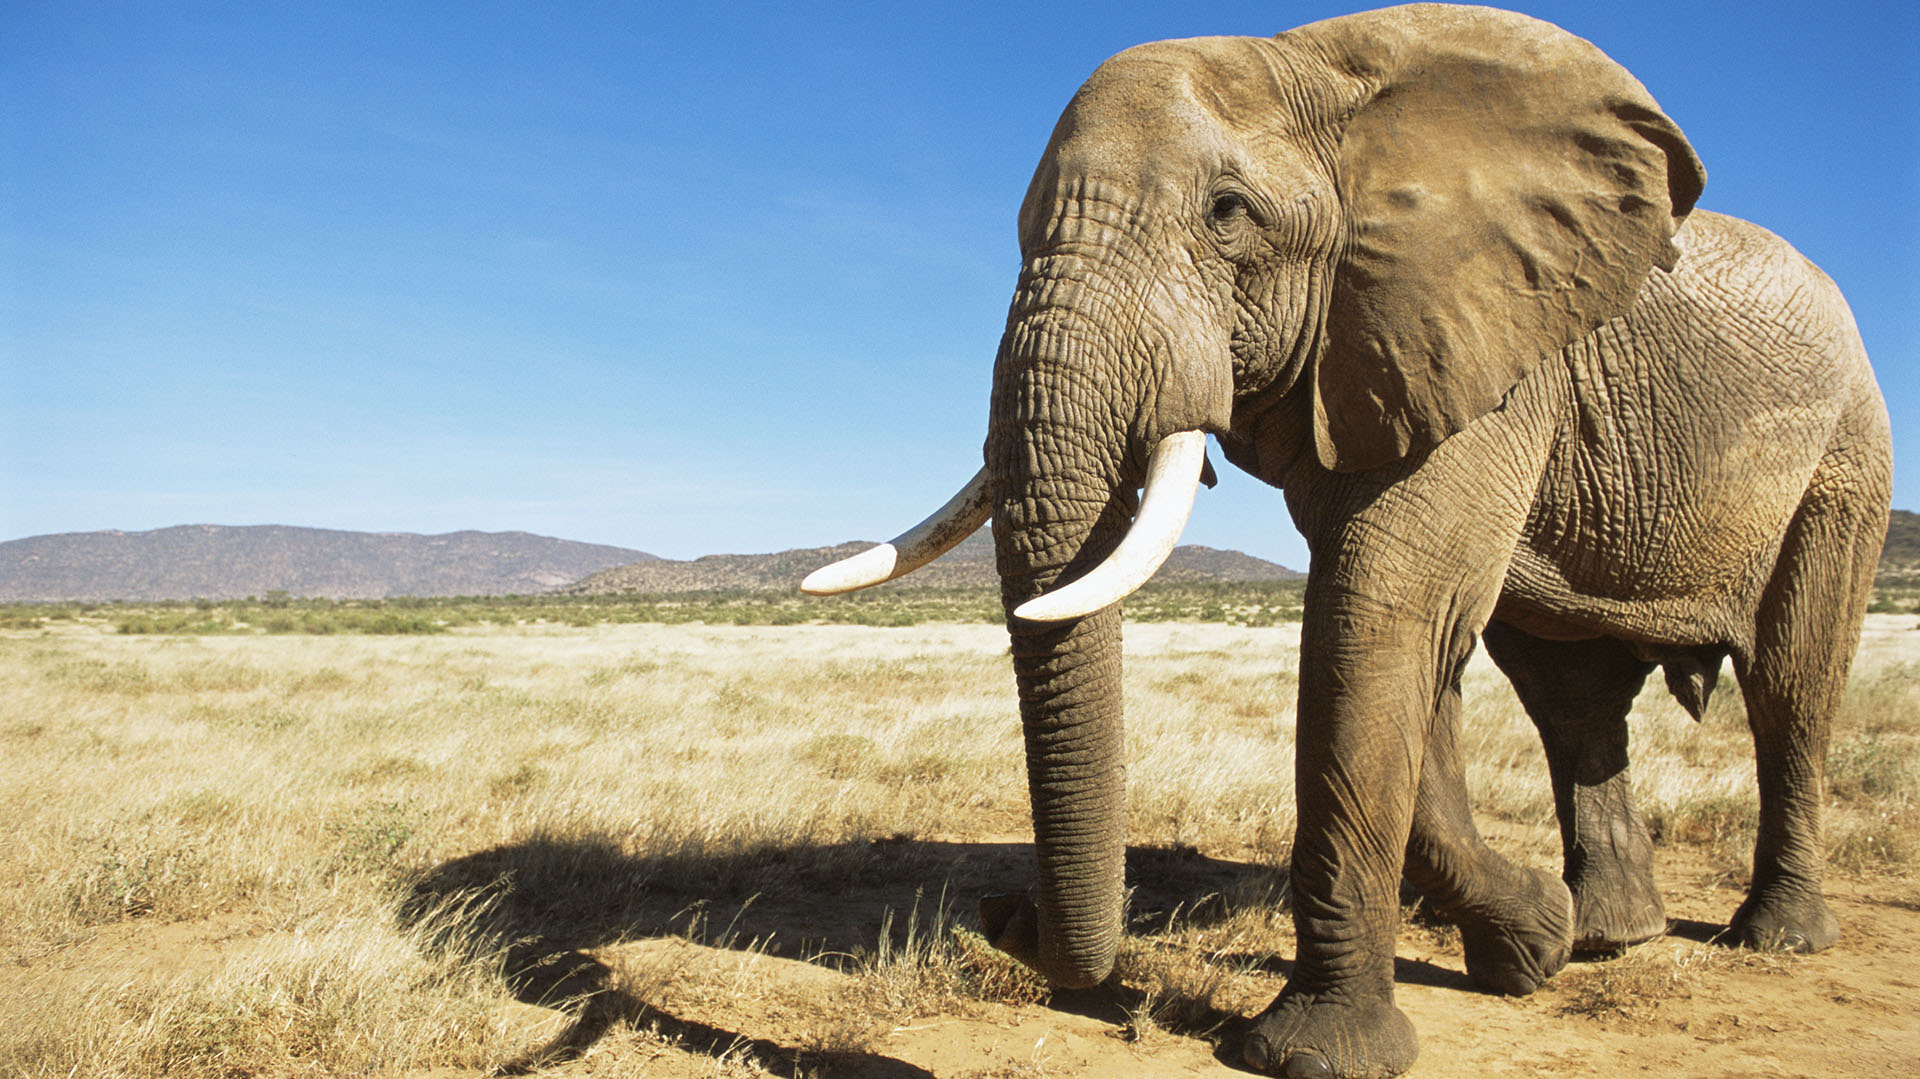 Los elefantes los africanos son los animales con las orejas más grandes que existe en el planeta Tierra, ya que miden unos 180 centímetros de largo por 110 centímetros de ancho
(Getty Images)